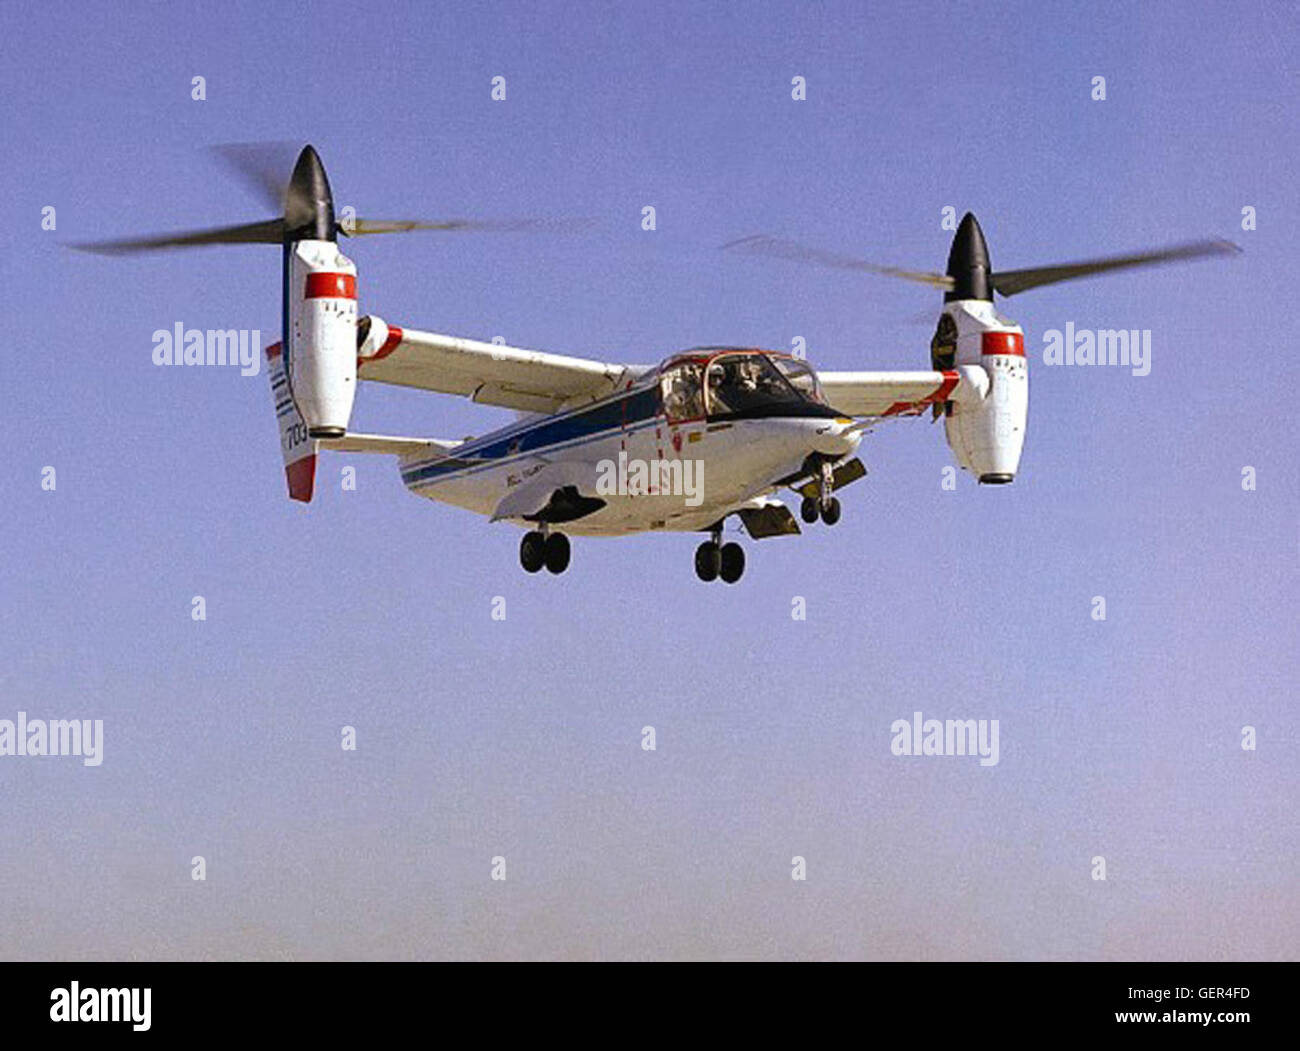 (1978) La NASA-Army-Bell XV-15 tiltrotor aviones de investigación rondado (1976) y luego demostró la conversión y la huida hacia delante (1978) como el primer vehículo de rotor basculante para resolver los problemas de "prop torbellino." a través de la tremendamente difícil investigación, las aeronaves de rotor basculante fue capaz de combinar las ventajas de la vertical de despegue y aterrizaje, que son inherentes al helicóptero tradicional, con la velocidad de avance y alcance de un avión turbohélice de ala fija. Esta investigación puede conducir eventualmente a la prestación de los servicios de transporte aéreo con la flexibilidad de la industria para la alta spe Foto de stock